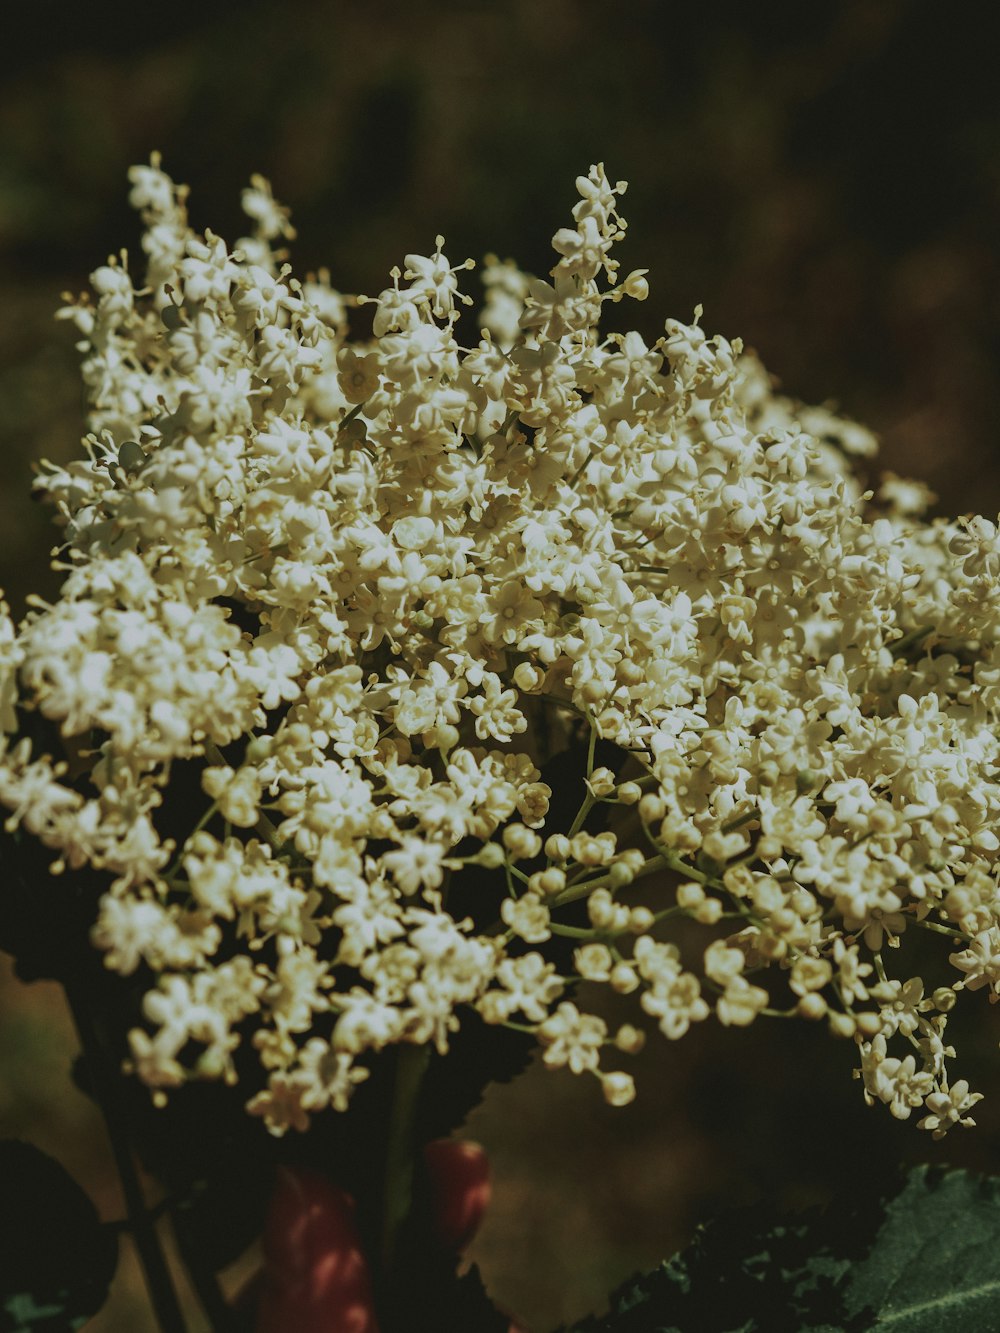 um close up de um ramo de flores brancas